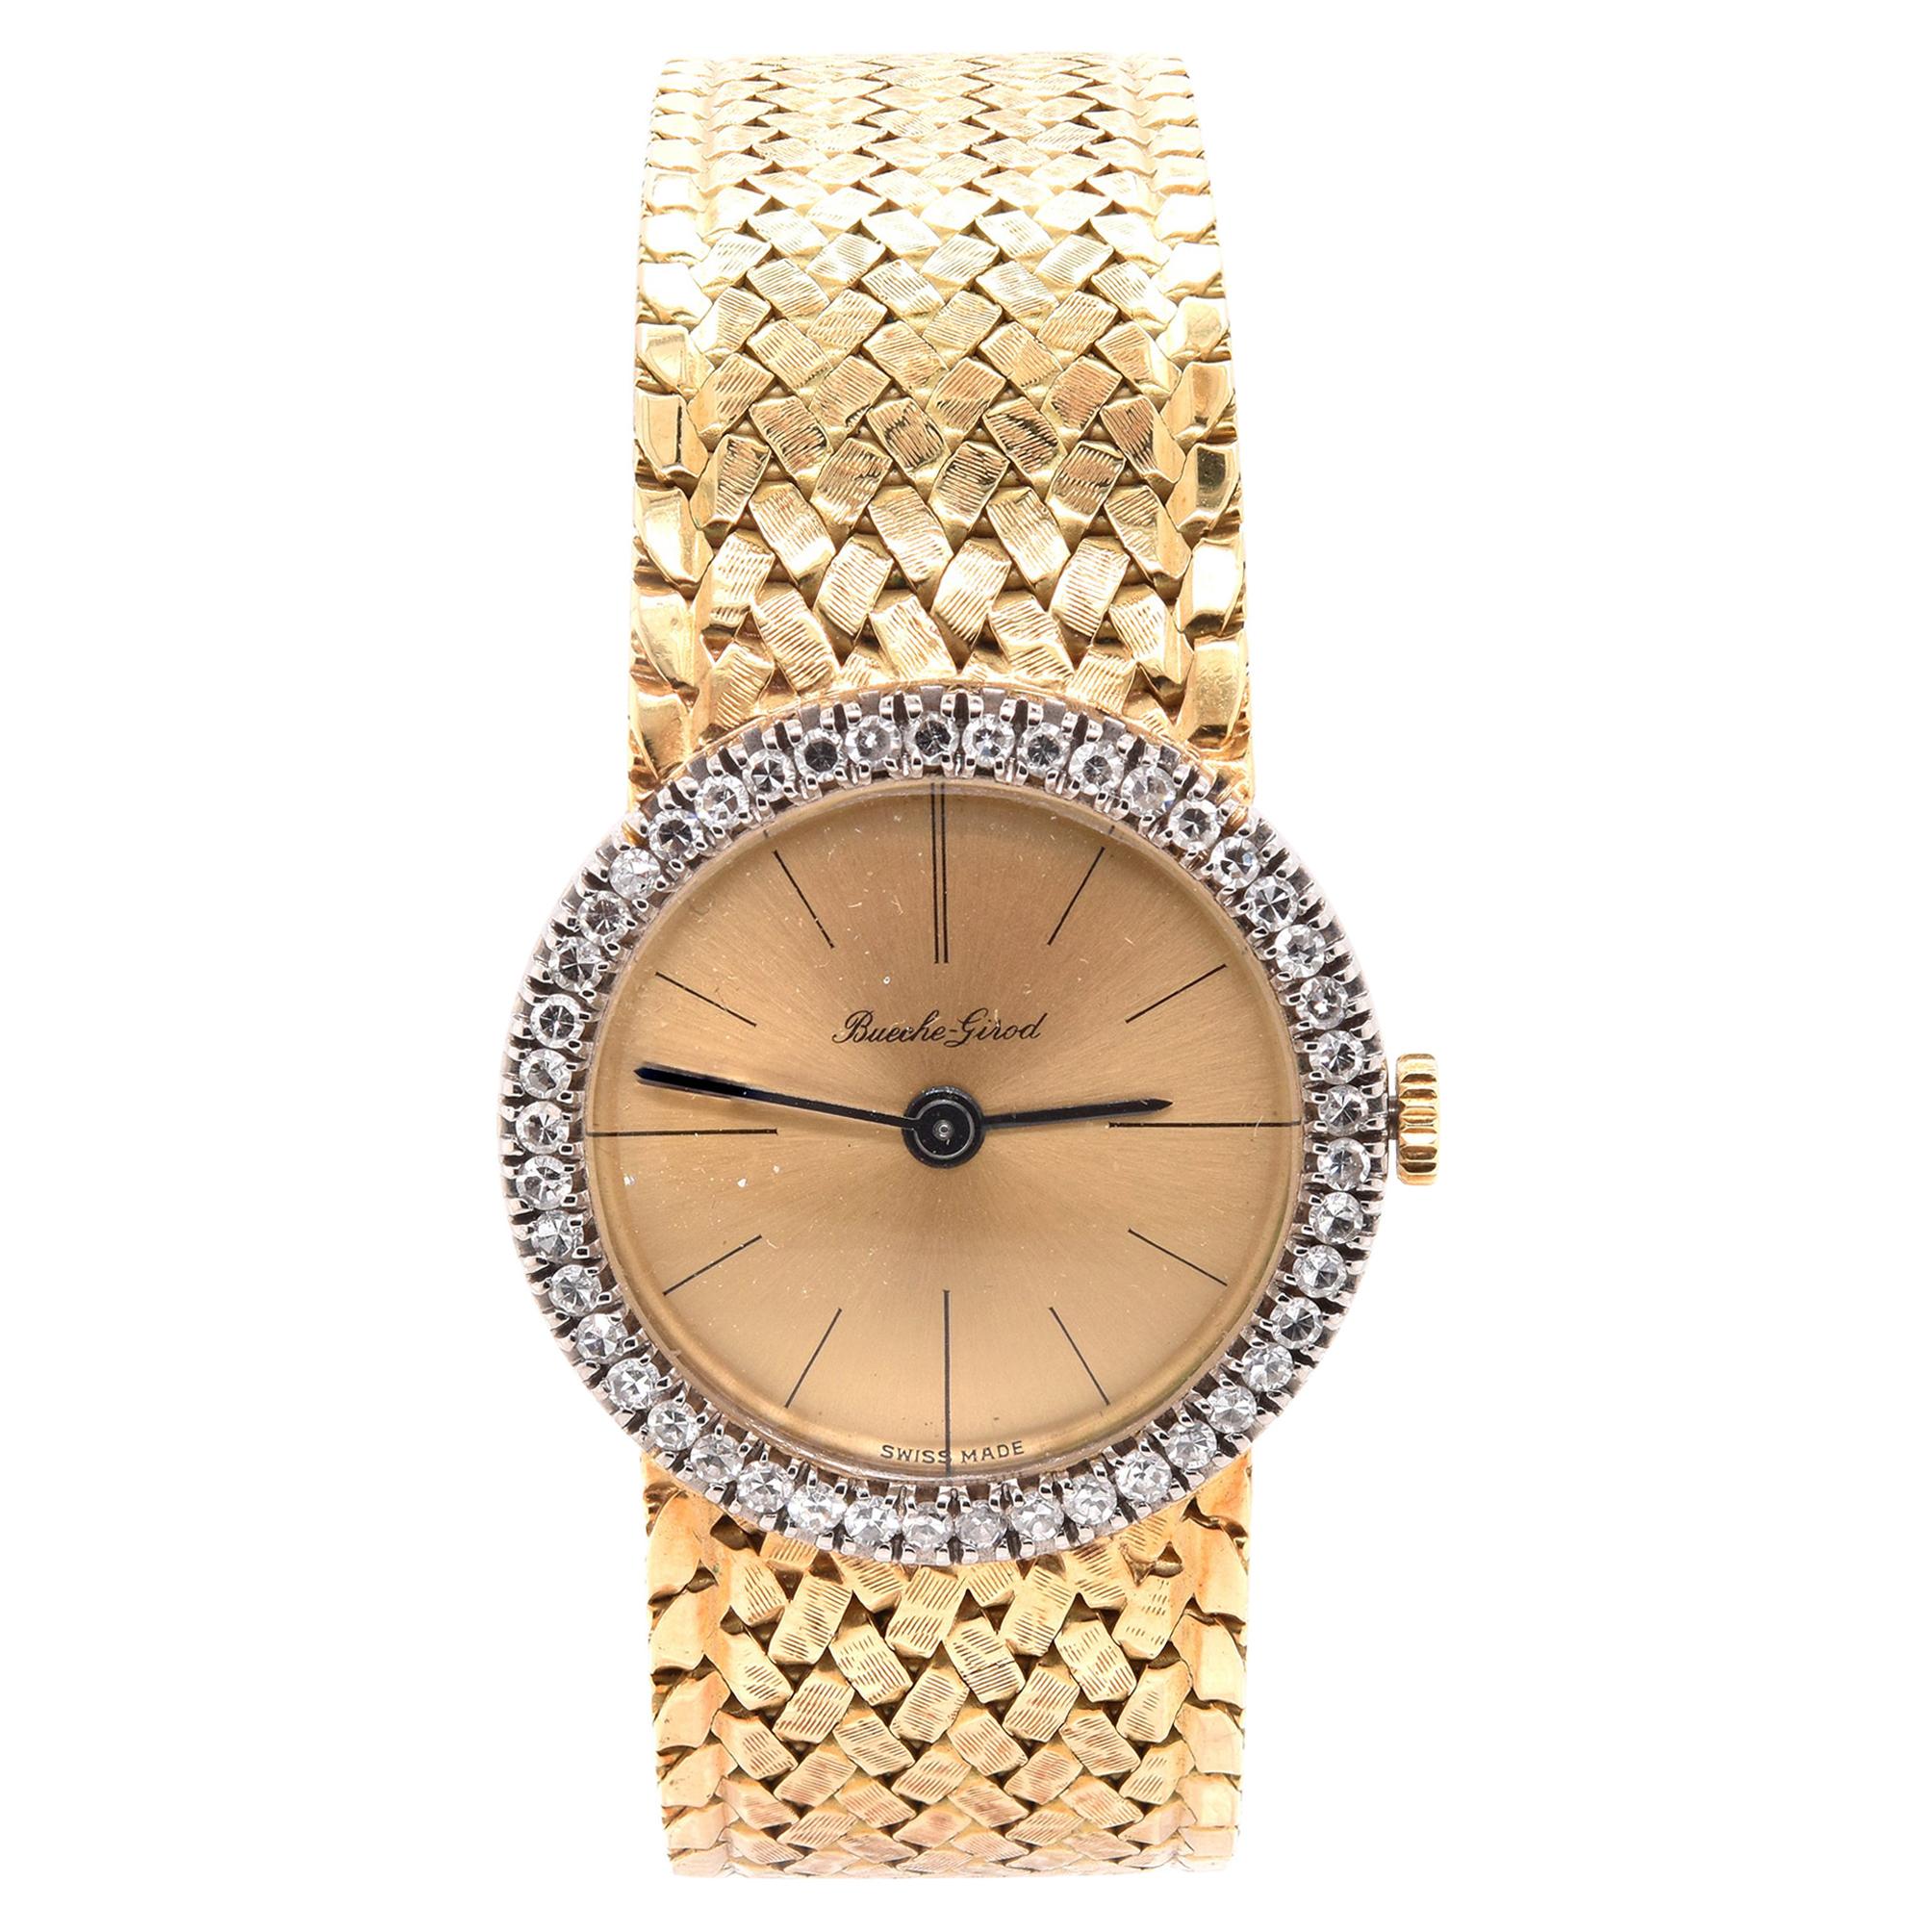 Bouche Girod Montre vintage en or jaune 18 carats avec diamants pour femmes